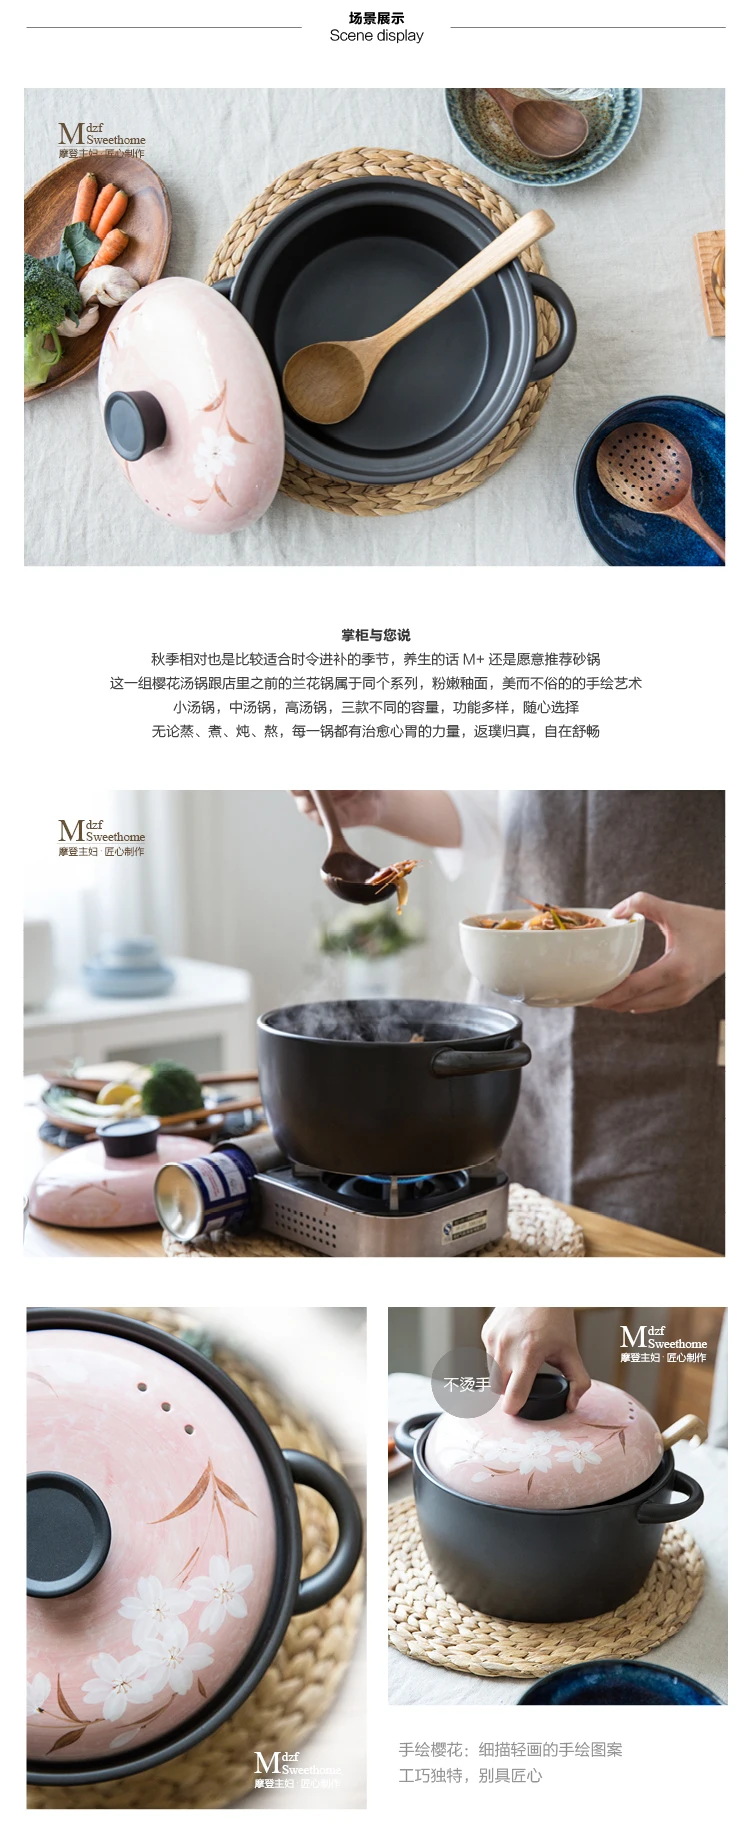 Домохозяйка Сакура горшок серии многофункциональный горшок высокотемпературная Керамическая супница горшок керамический горшок